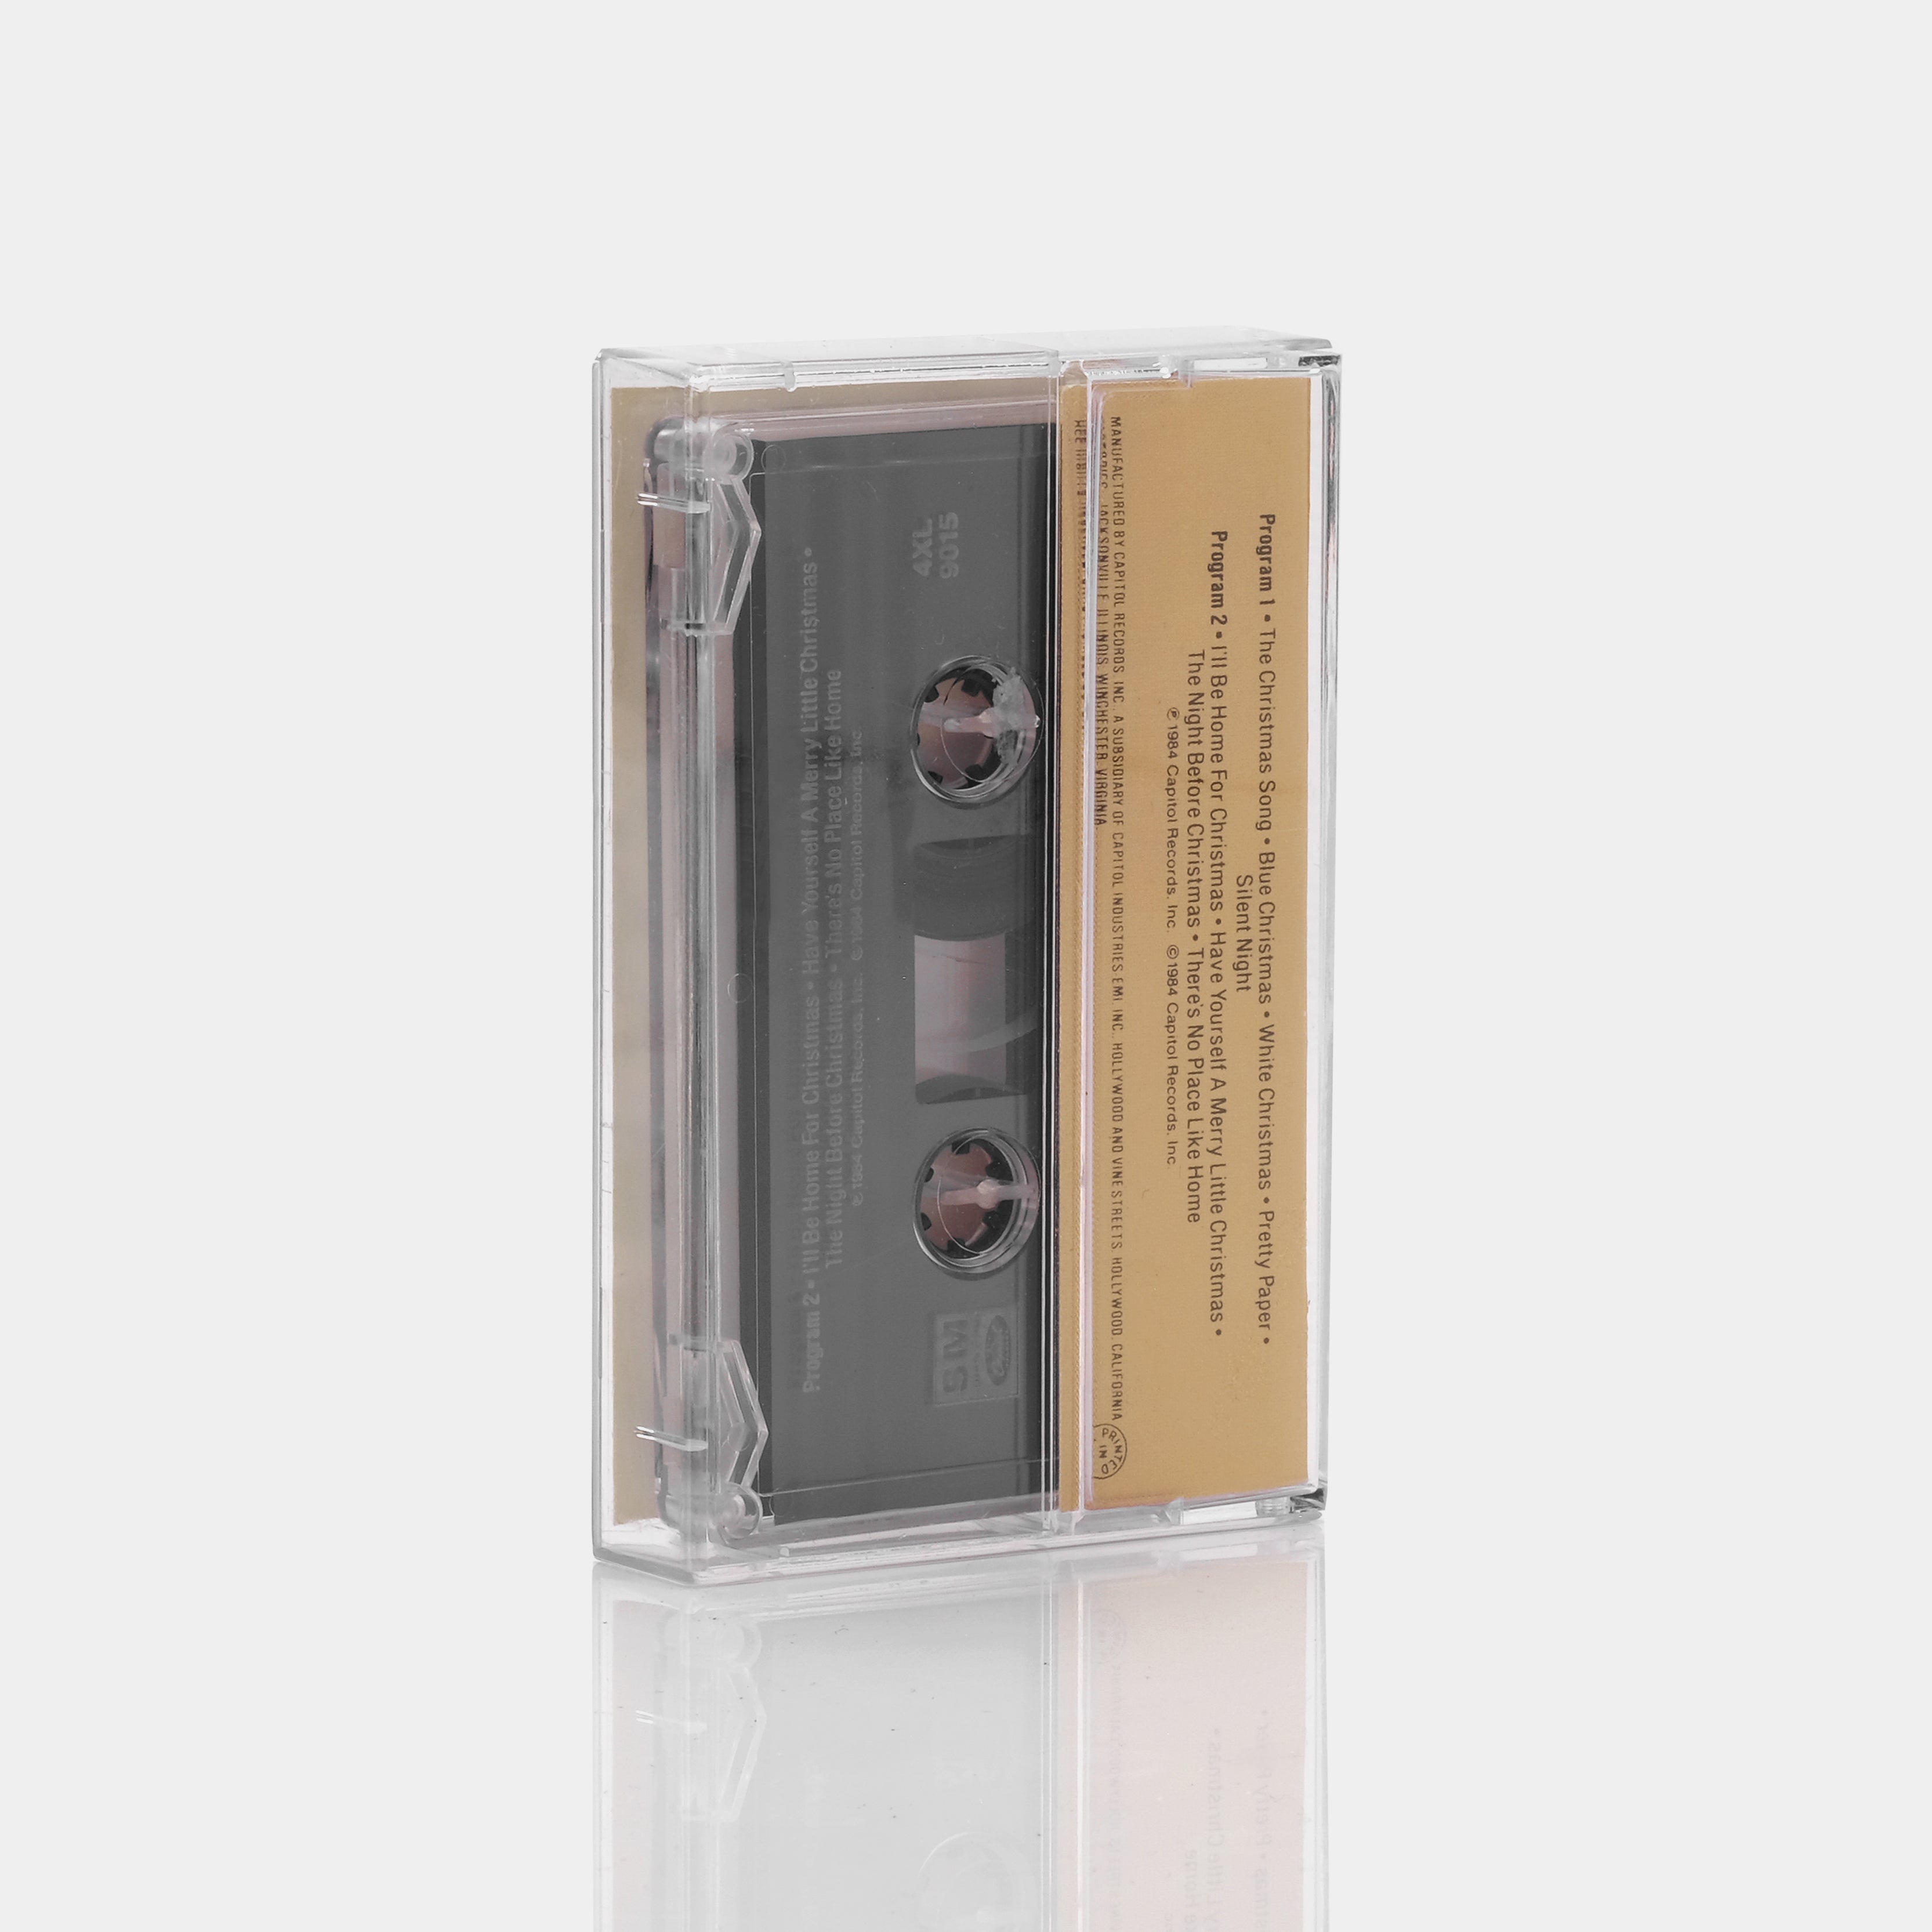 Glen Campbell - The Night Before Christmas Cassette Tape